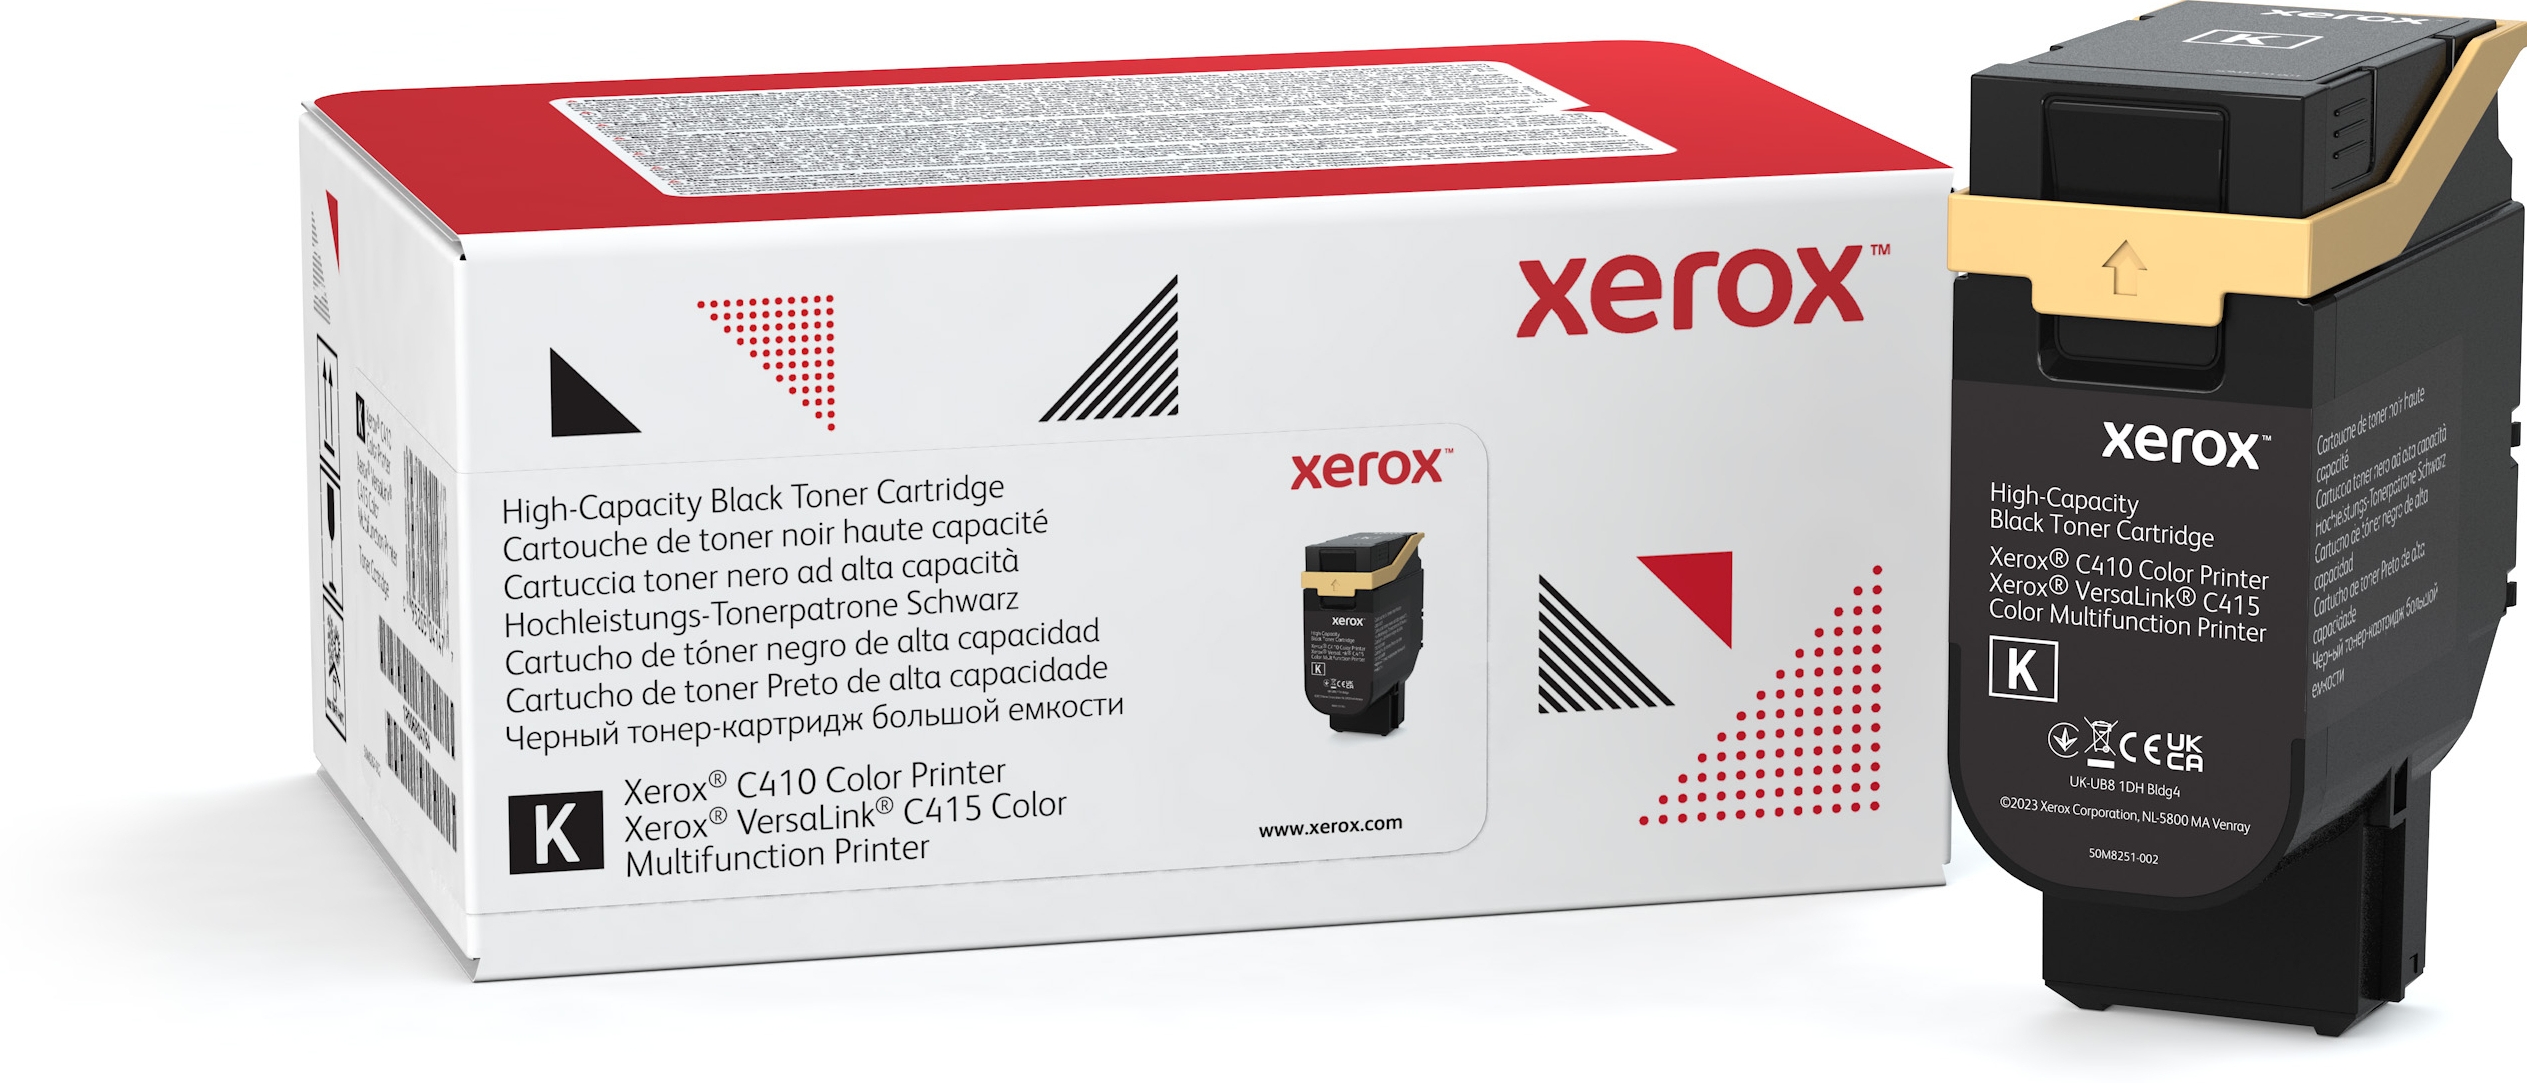 Xerox VersaLink C410/C415 cassette zwarte toner grote capaciteit (10.500 pagina's), 10500 pagina's, Zwart, 1 stuk(s)